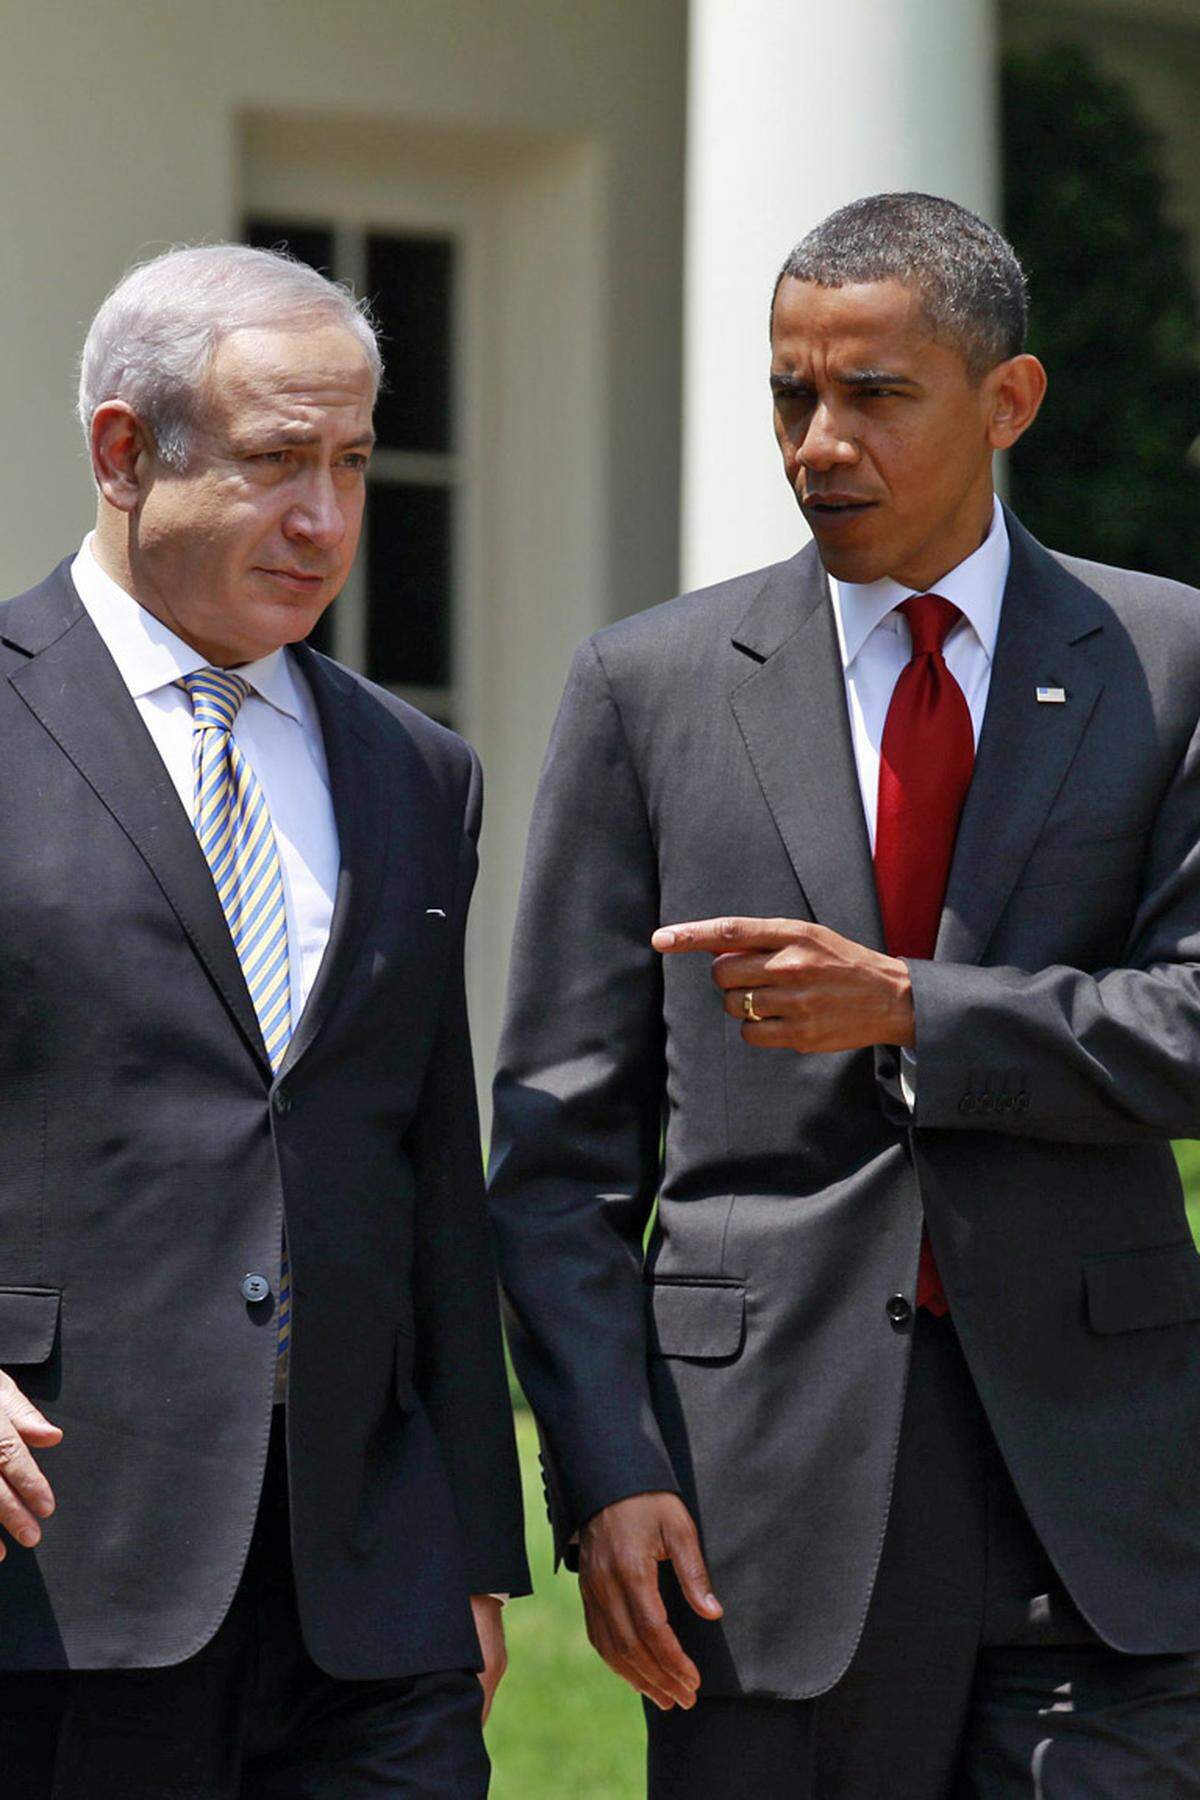 Für Befürworter eines Angriffs in Israel drängt die Zeit: Der Iran hat damit begonnen, seine Anlagen zur Urananreicherung unter die Erde zu verlegen, um sie vor Luftangriffen zu schützen. Außerdem ist der Zeitpunkt aus Sicht der Befürworter günstig: US-Präsident Obama (im Bild mit Israels Premier Benjamin Netanyahu) stellt sich im November zur Wiederwahl. Er könnte es sich im Wahlkampf wohl kaum leisten, dem Verbündeten Israel die Unterstützung zu verweigern.